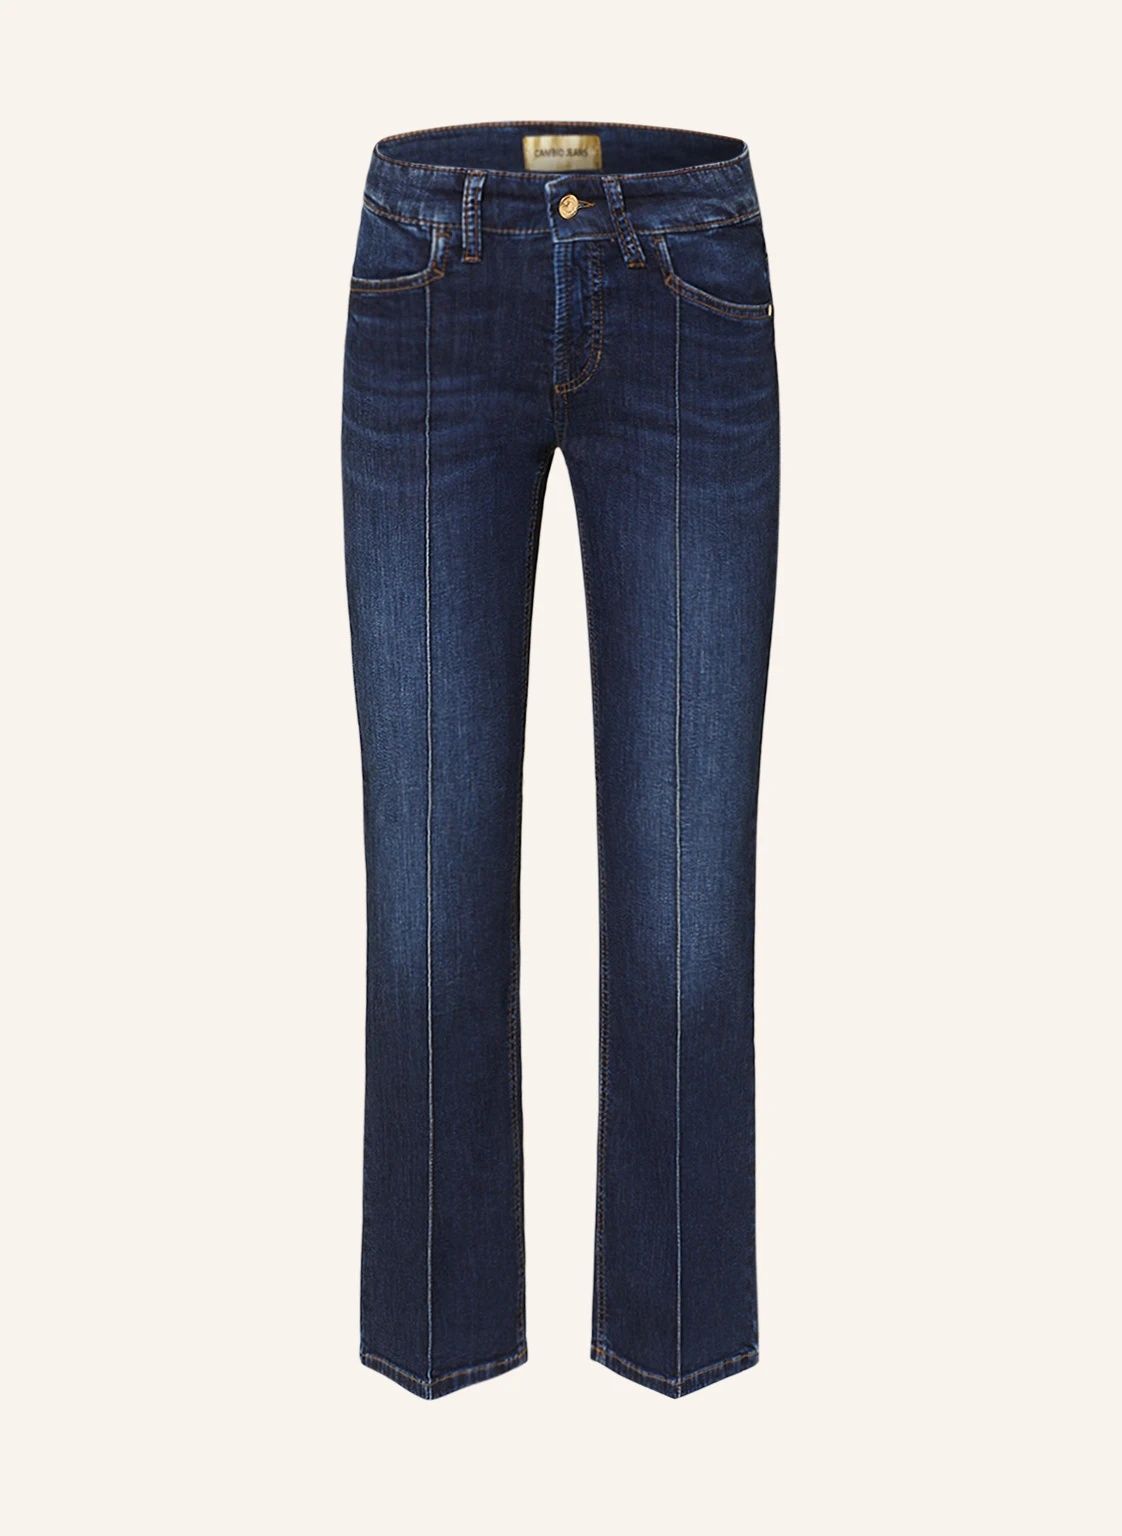 Spodnie jeansowe damskie Cambio Francesca 7/8 rozmiar 40